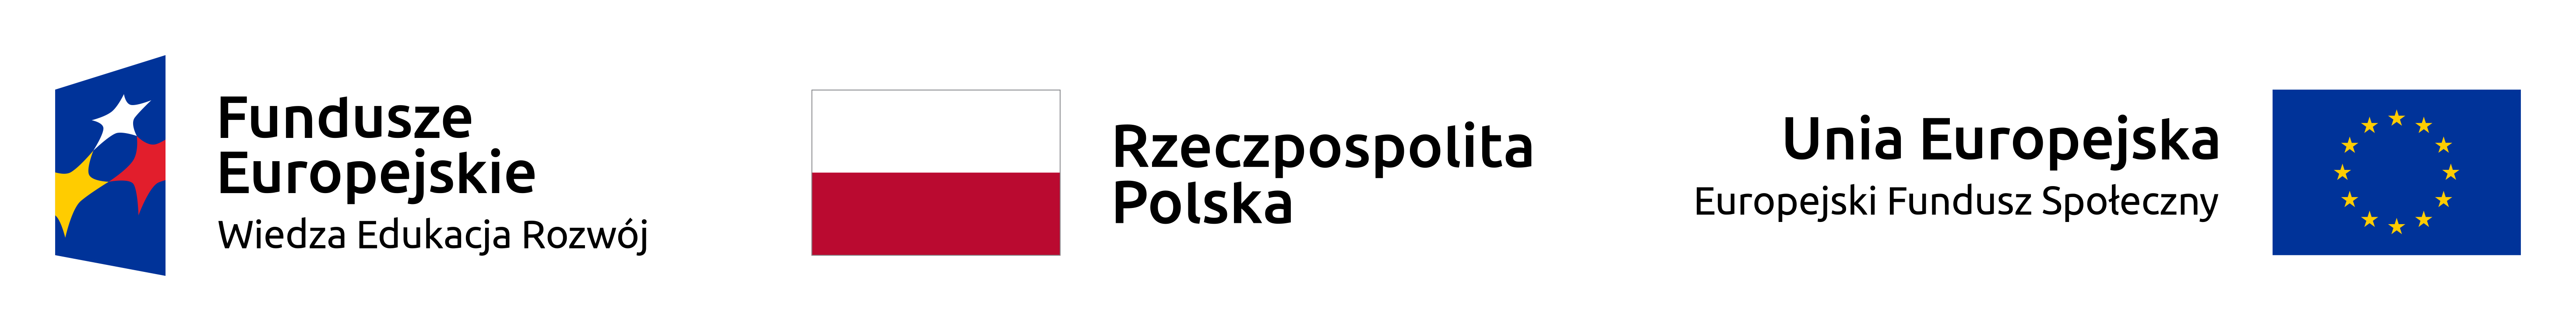 Logotypy projektu